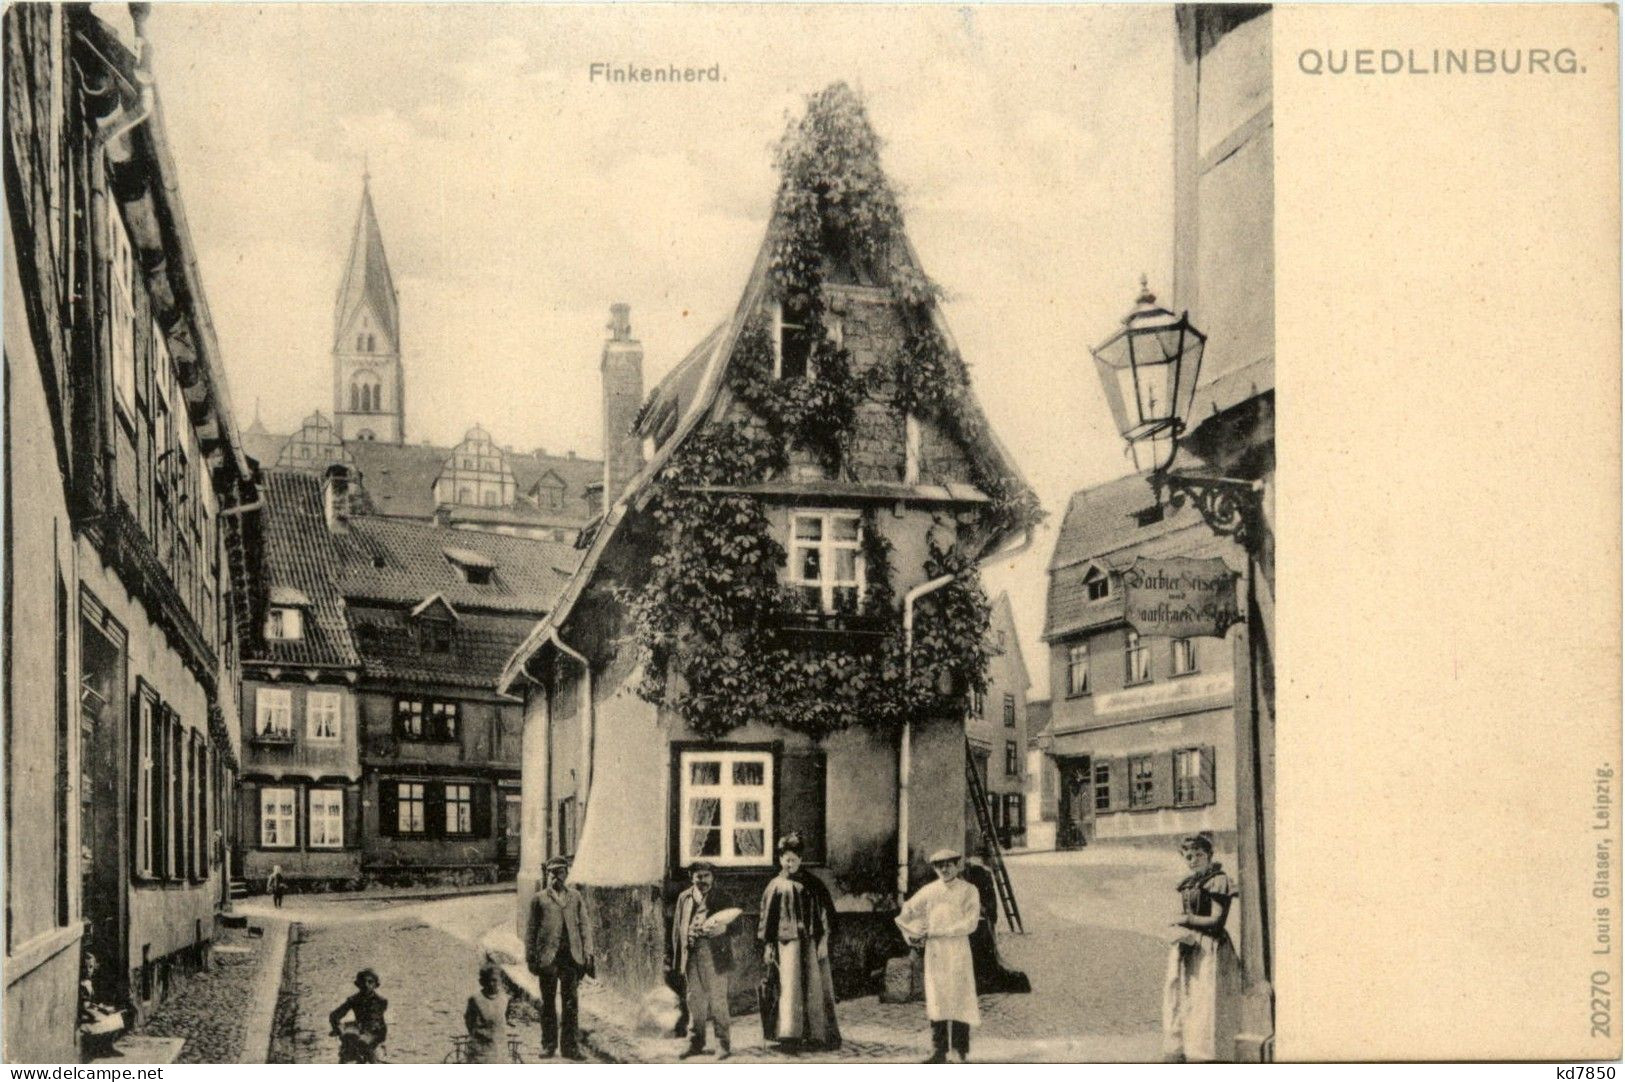 Quedlinburg - Finkenherd - Quedlinburg